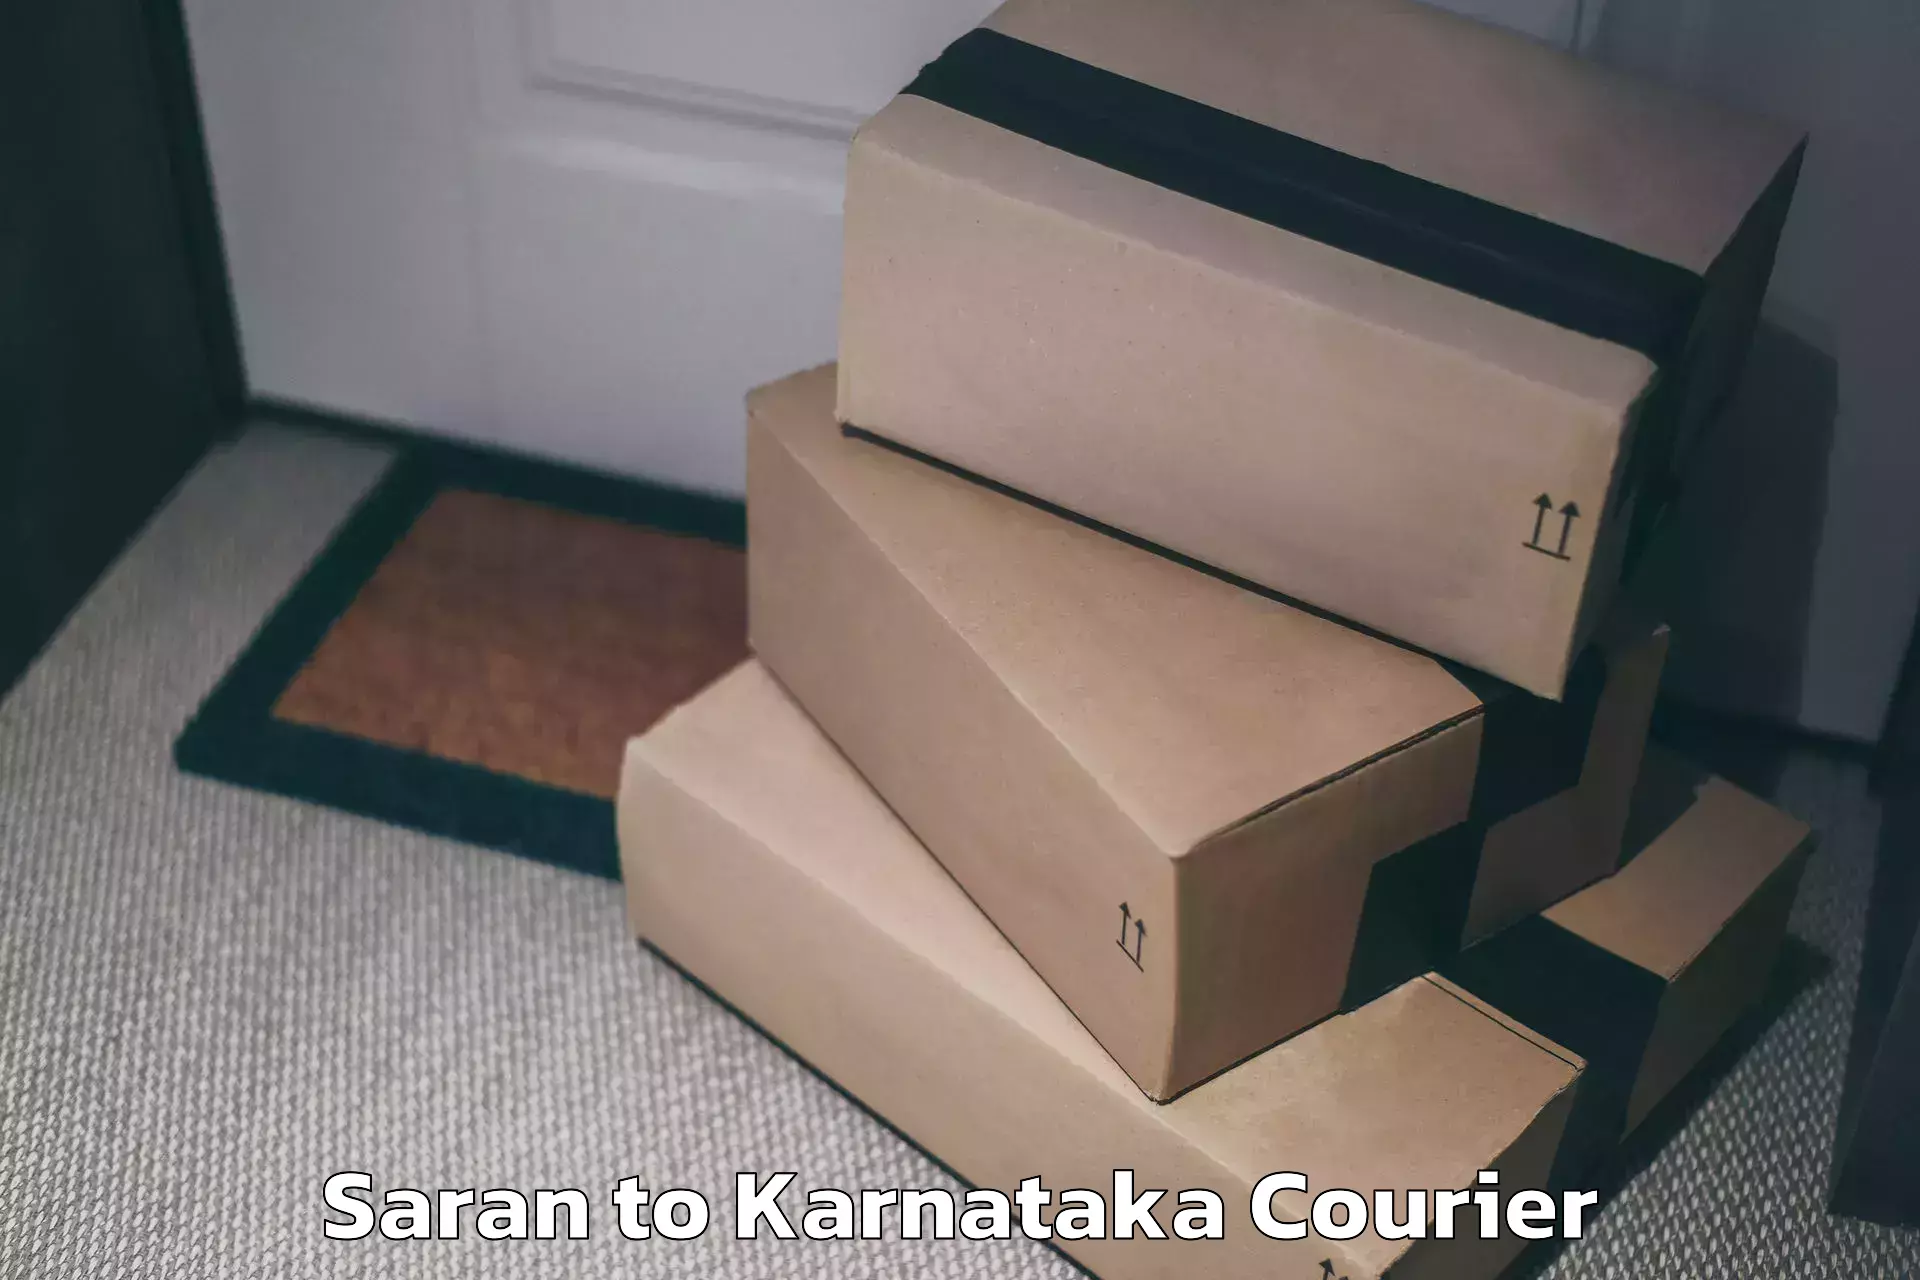 Luggage transport operations Saran to Karnataka